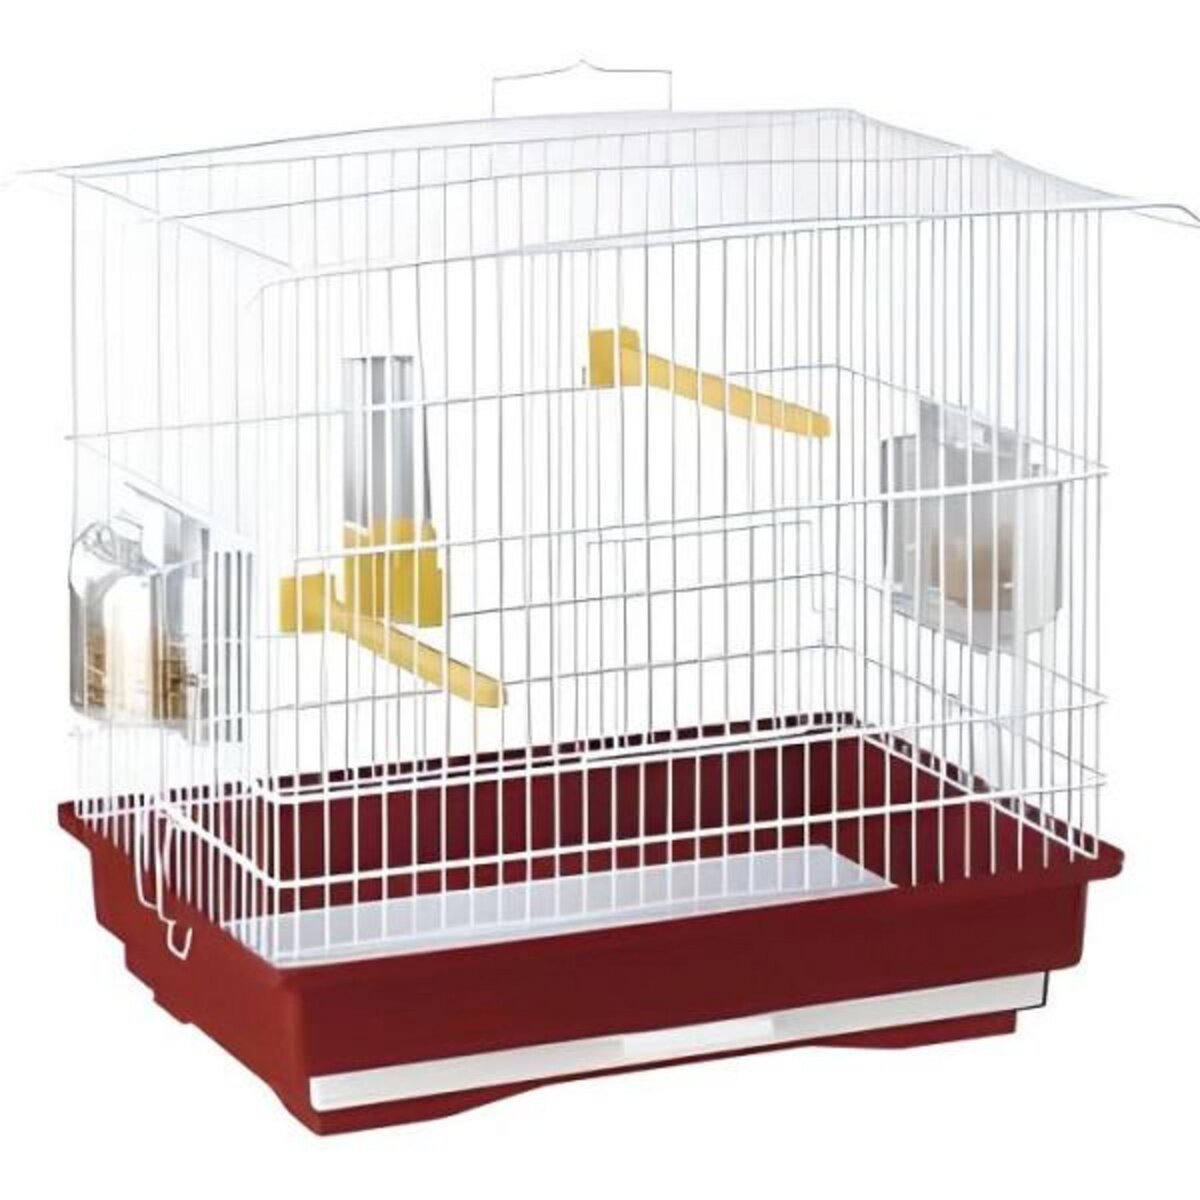 Petite cage oiseaux - 2 mangeoires, 2 perchoirs, 1 abreuvoir